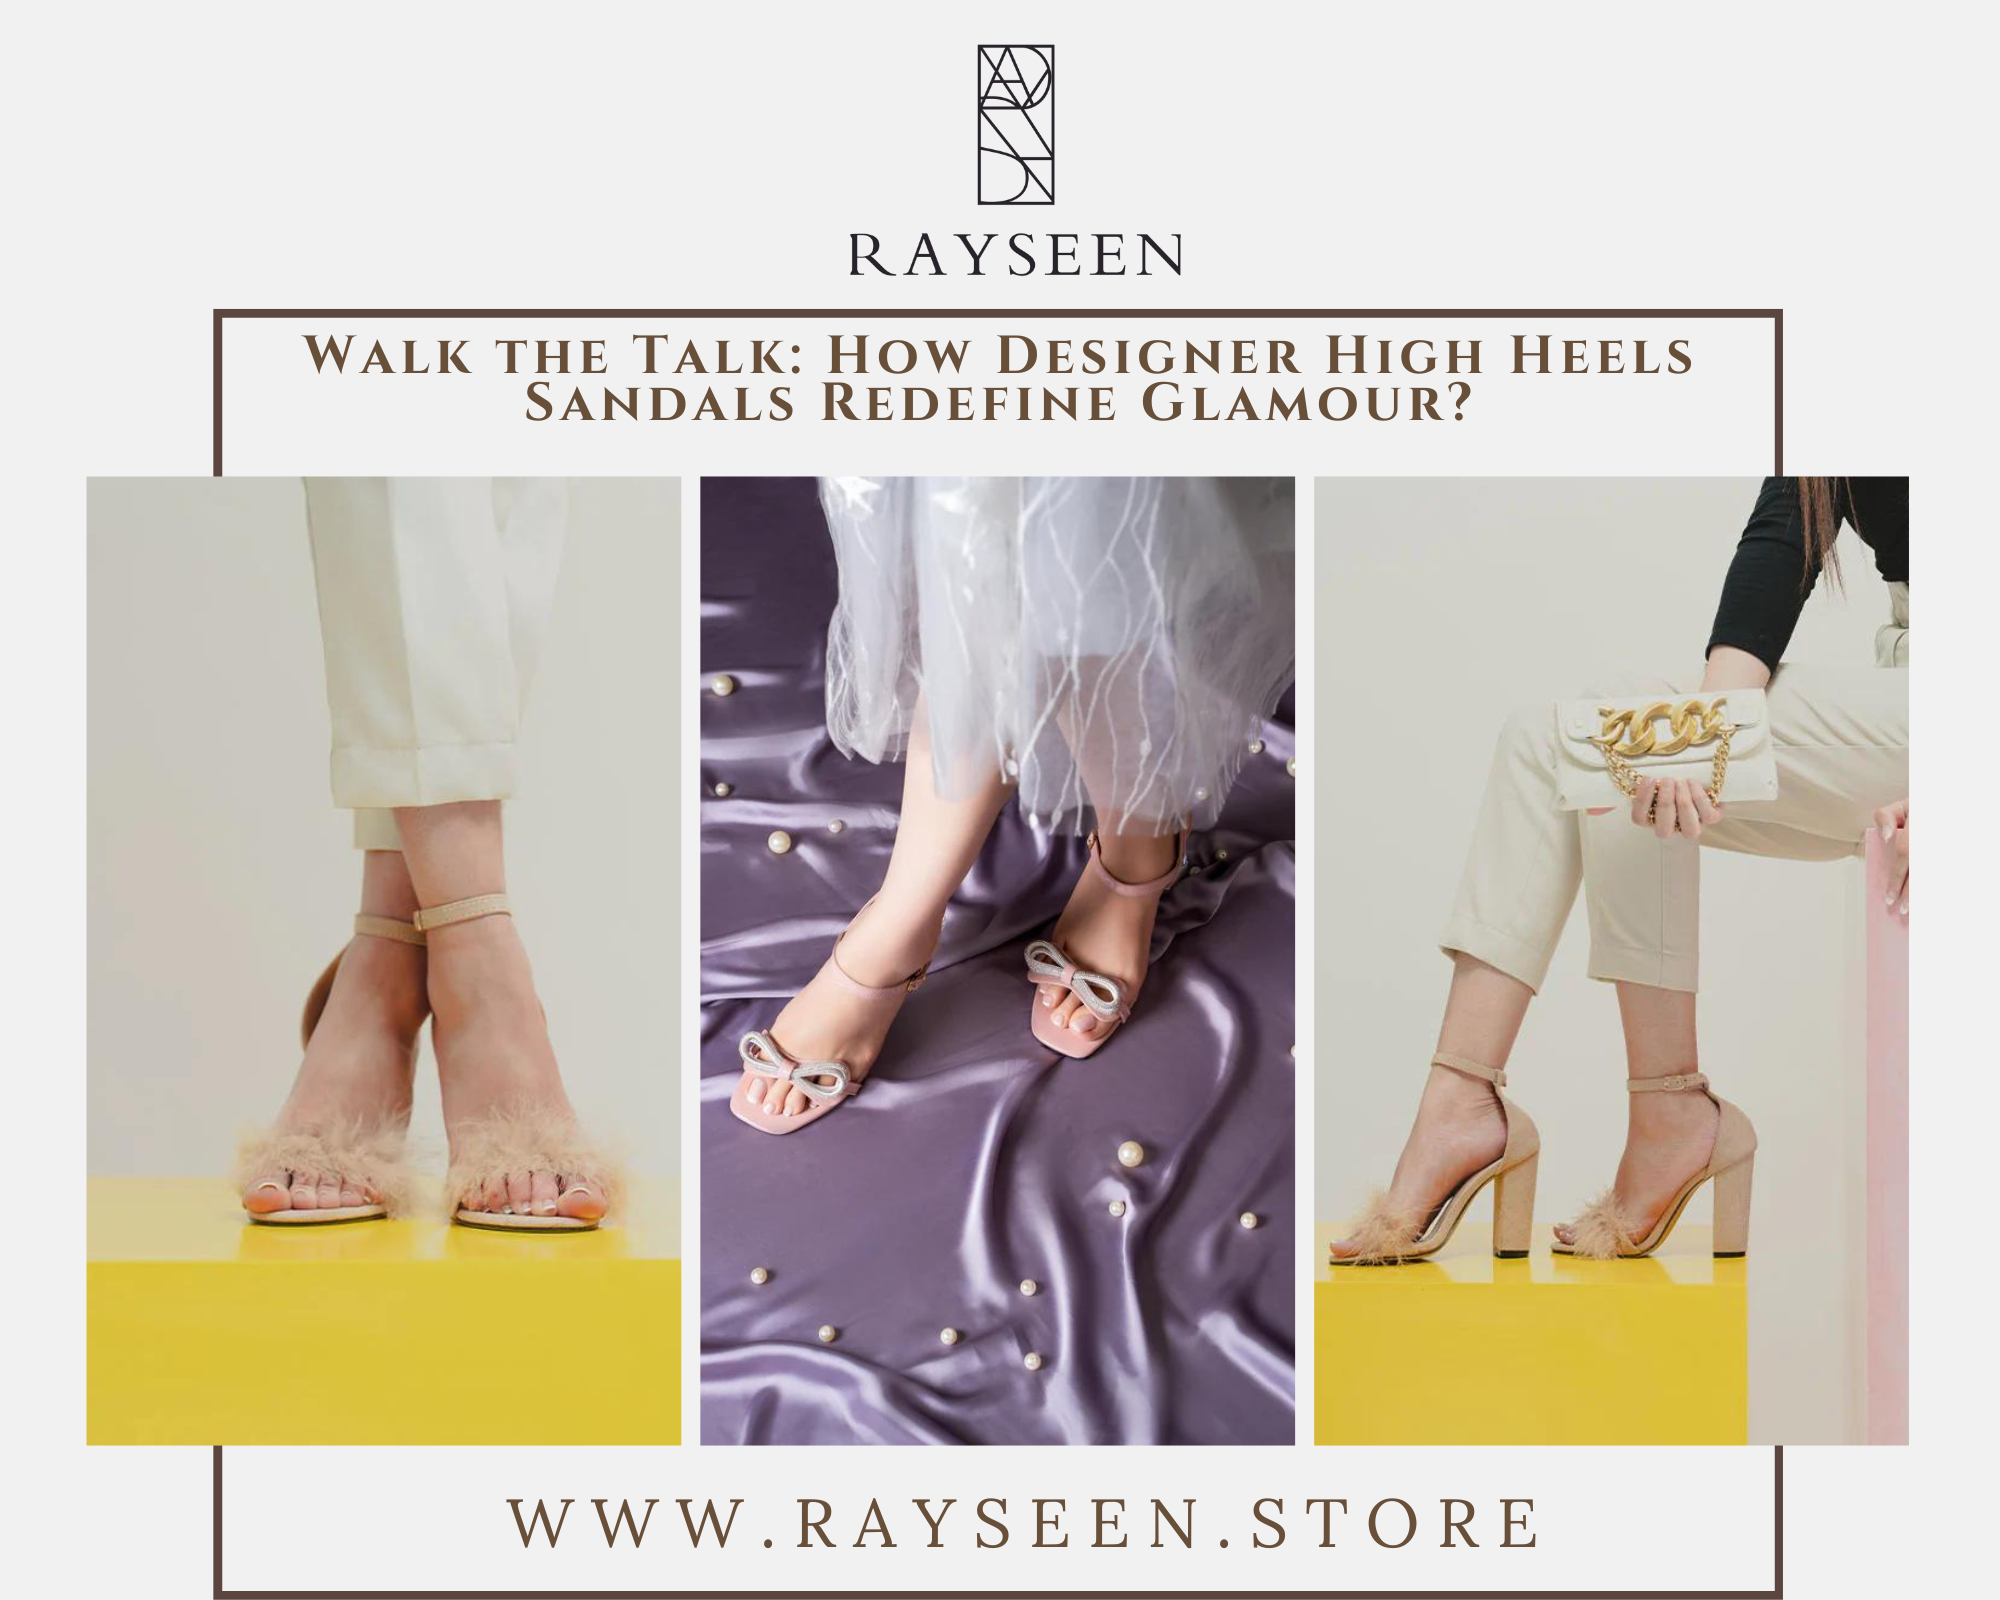 Walk the Talk: How Designer High Heels Sandals Redefine Glamour?